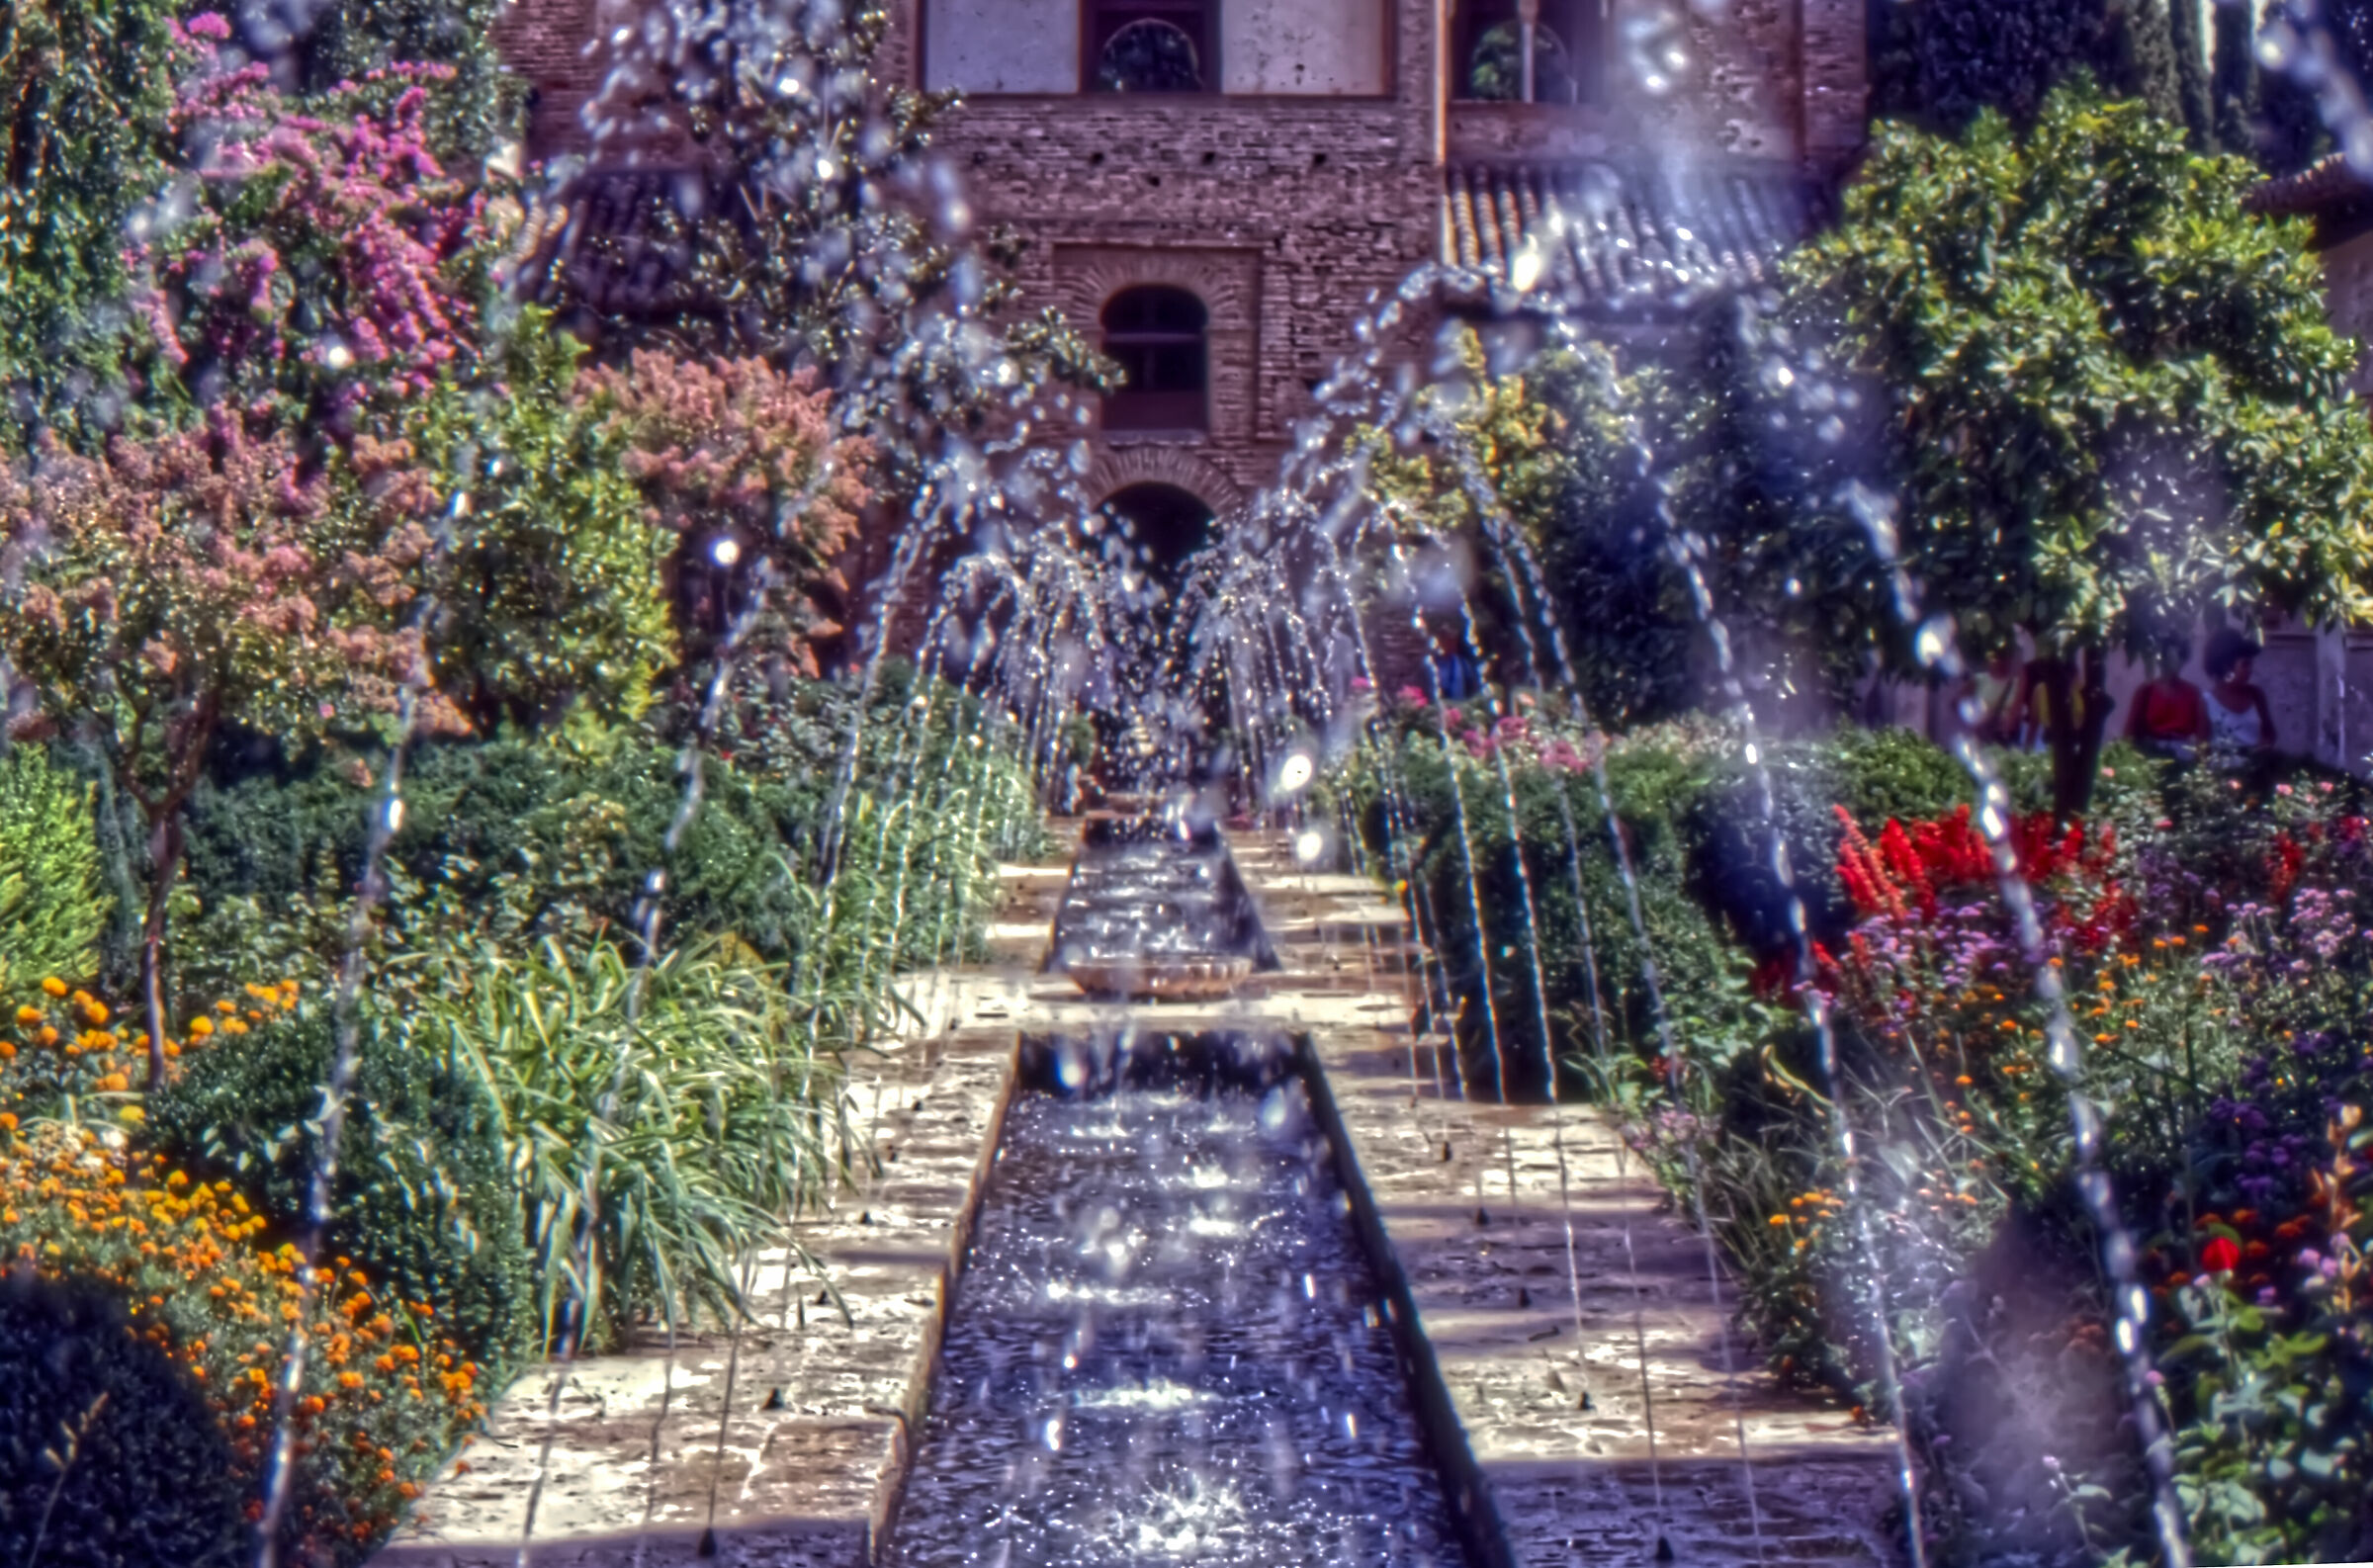 Alhambra 1989...